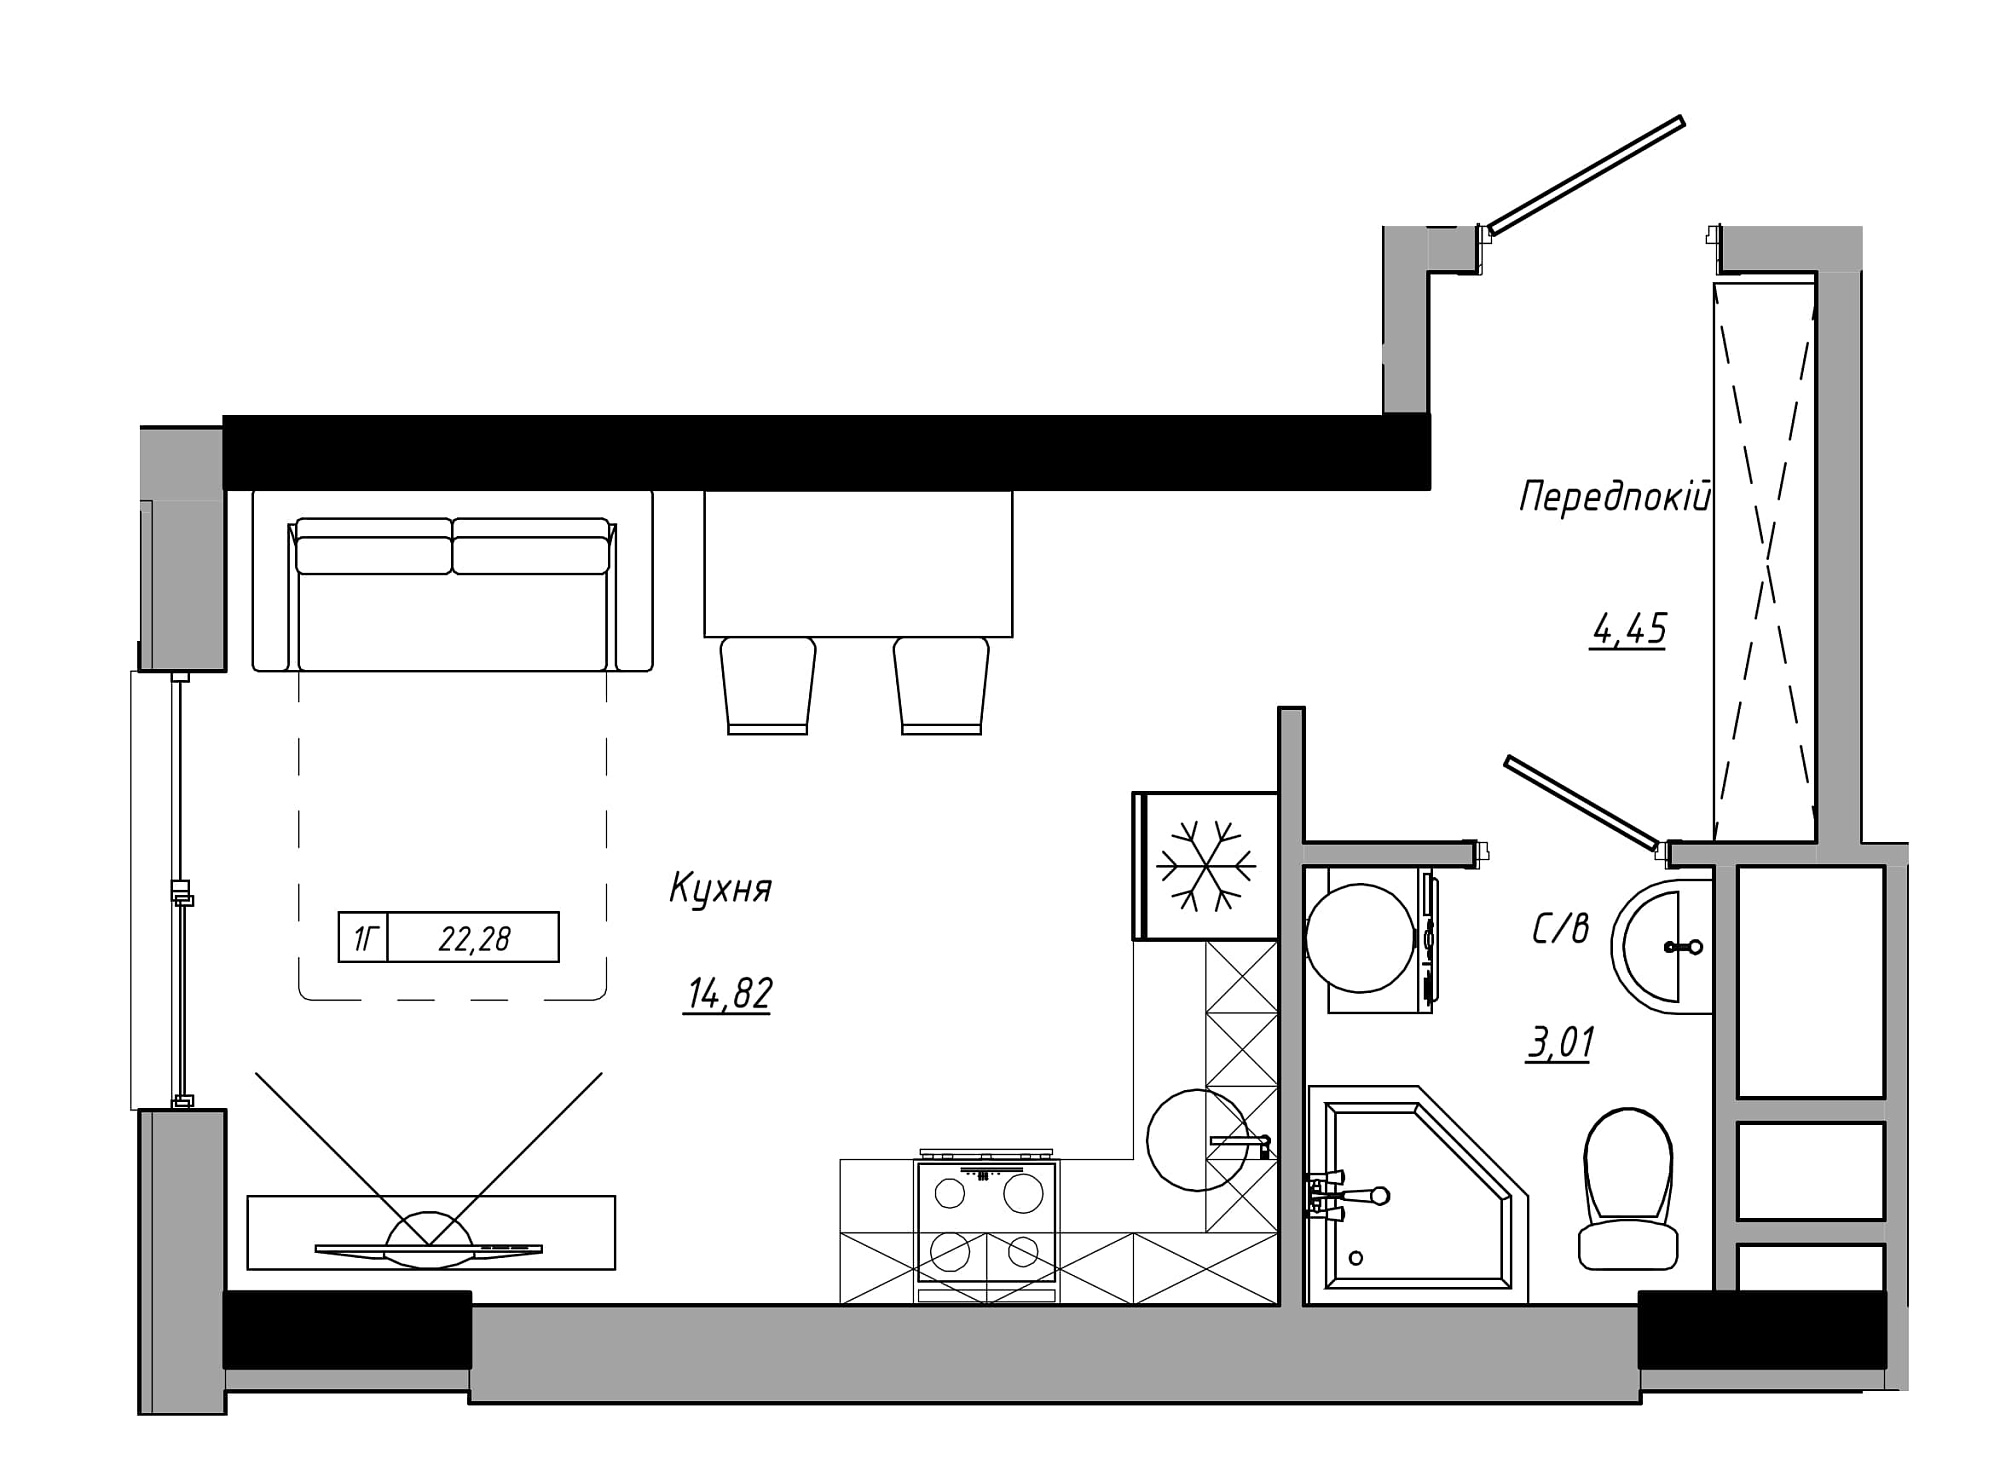 Планування Smart-квартира площею 22.28м2, AB-21-06/00005.